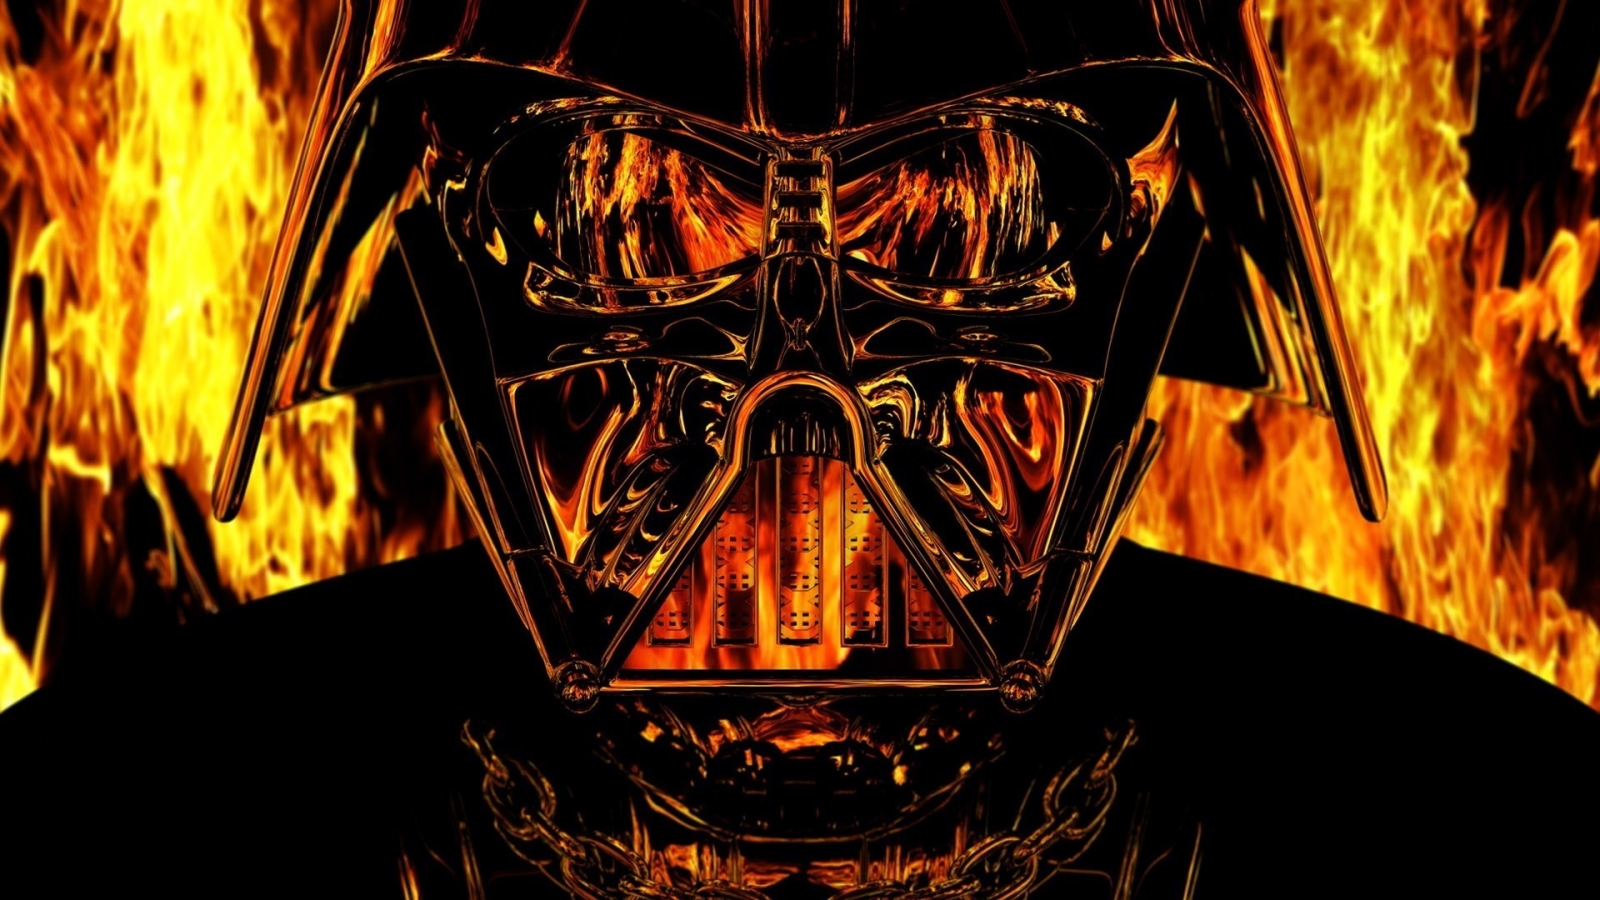 Darth Vader Star Wars for 1600 x 900 HDTV resolution